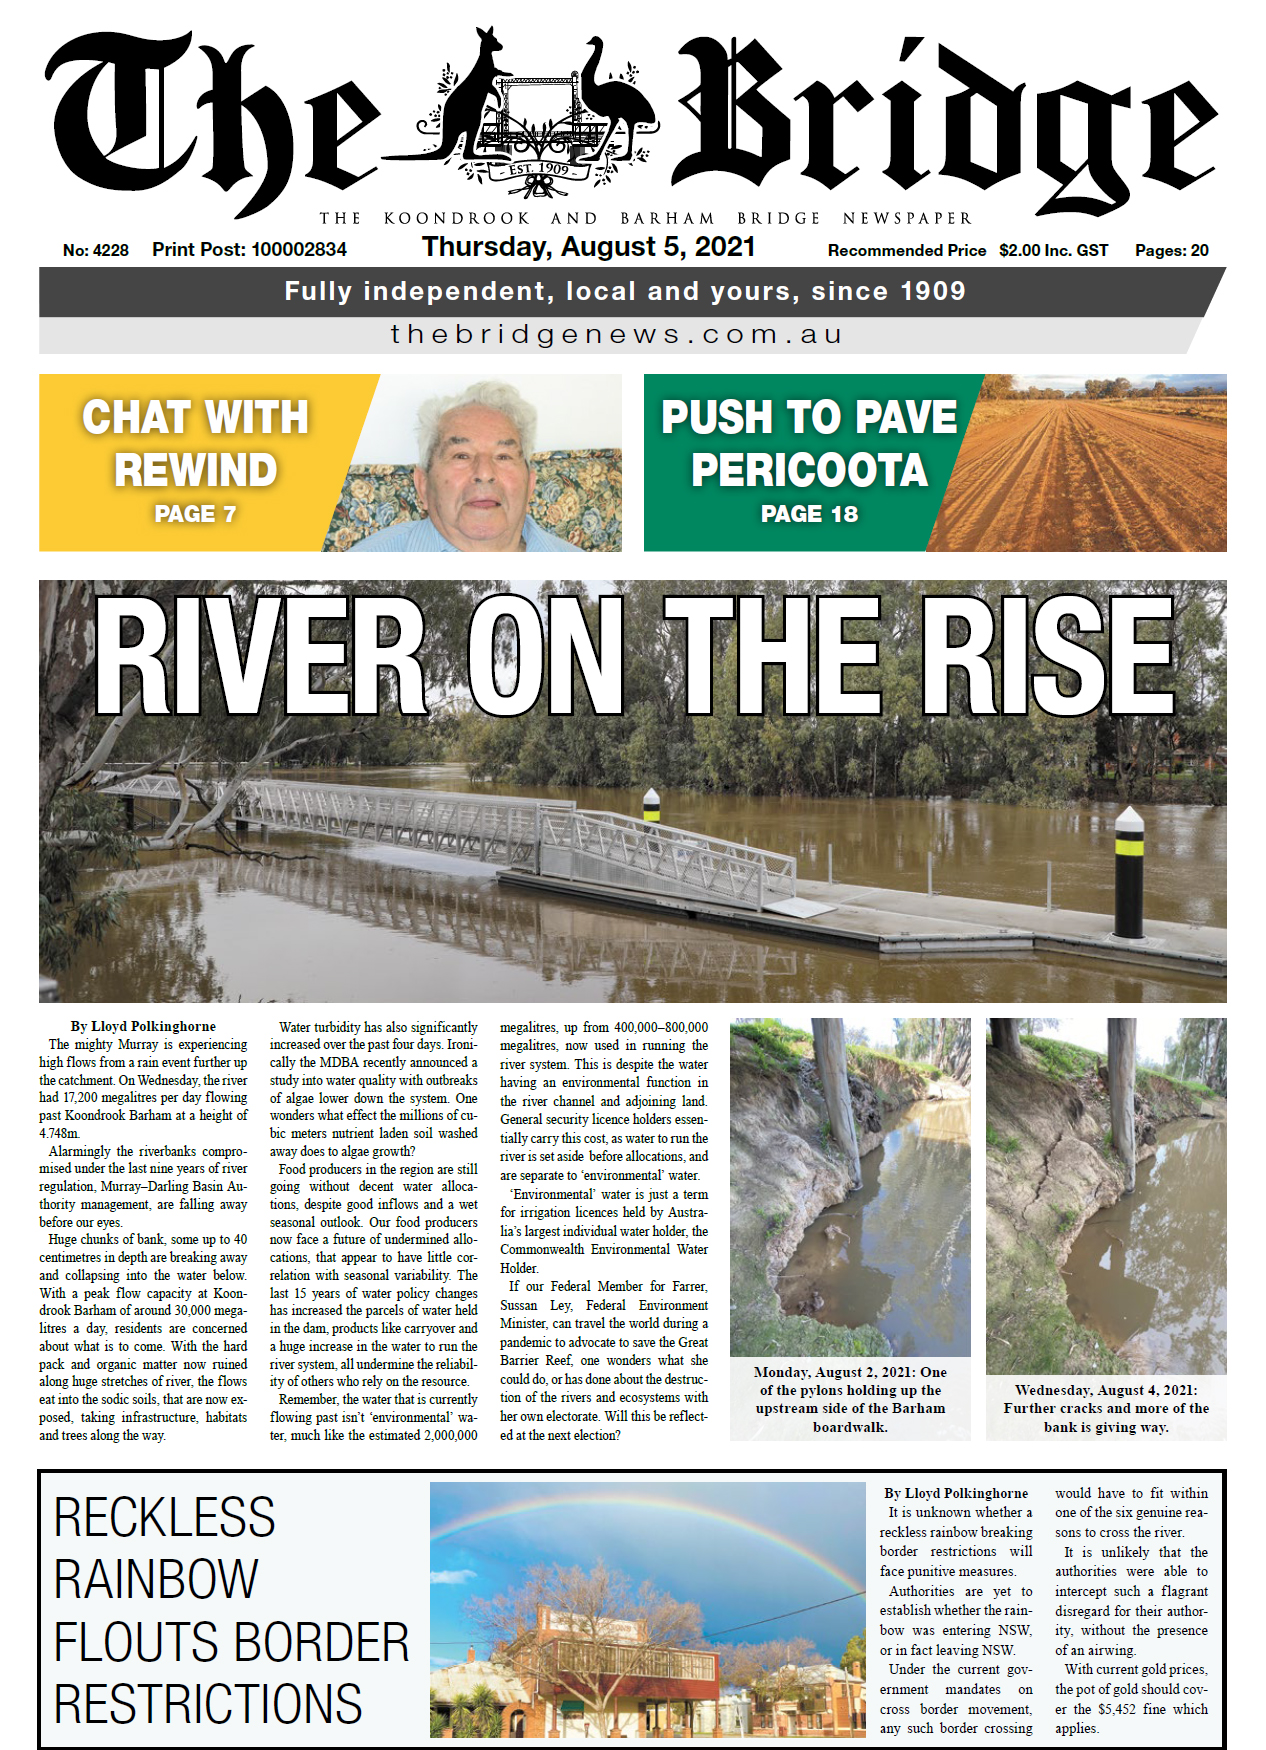 The Koondrook and Barham Bridge Newspaper 5 August 2021